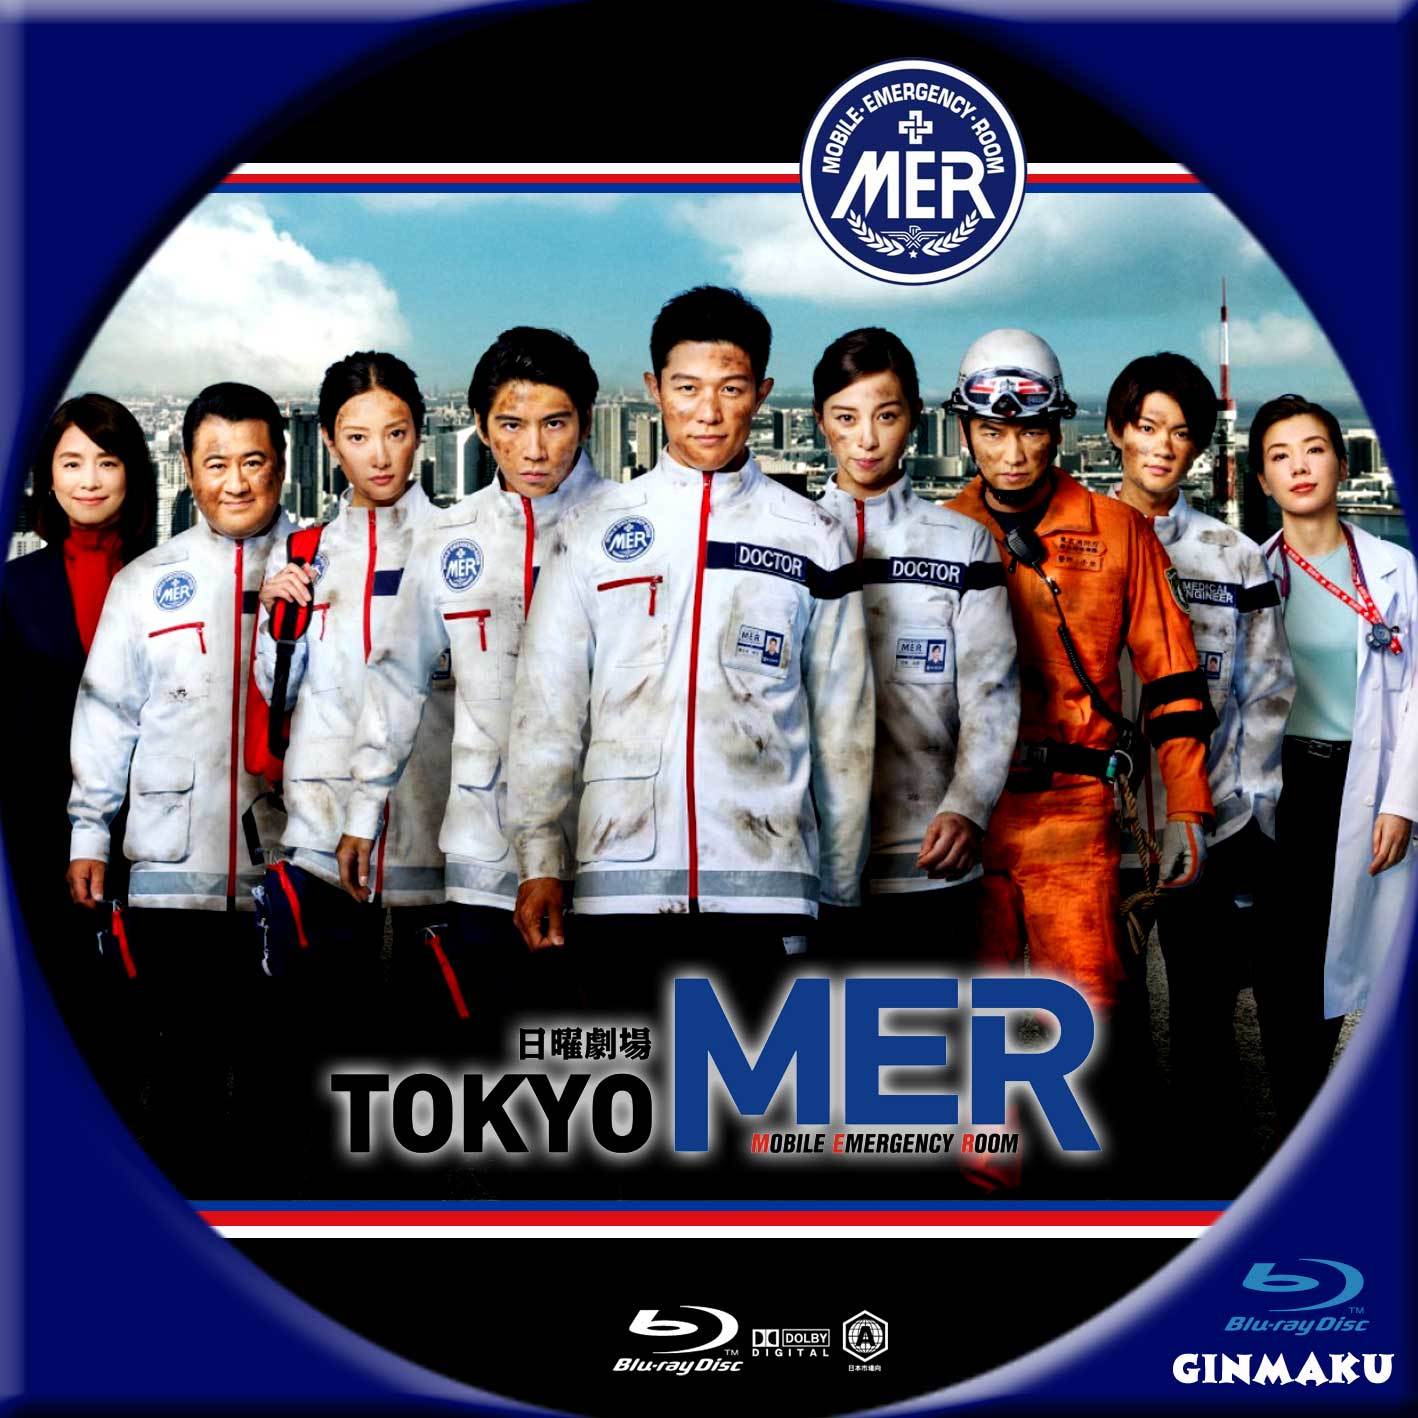 輸入 TokyoMER DVD TVドラマ confmax.com.br